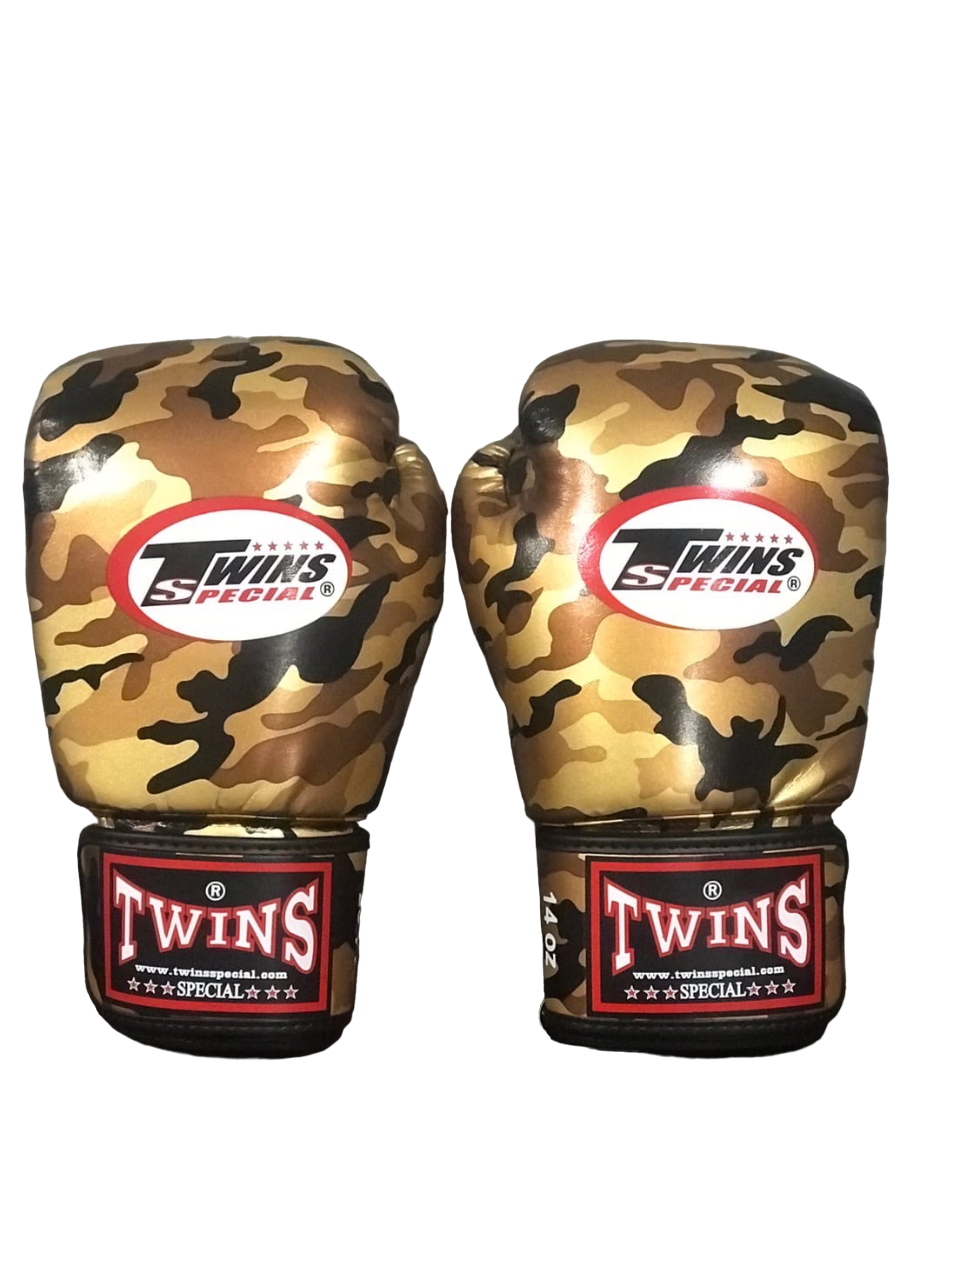 Боксерские перчатки TWINS fbgvs3-ml золотые FBGVS3-MLGD 16 унций